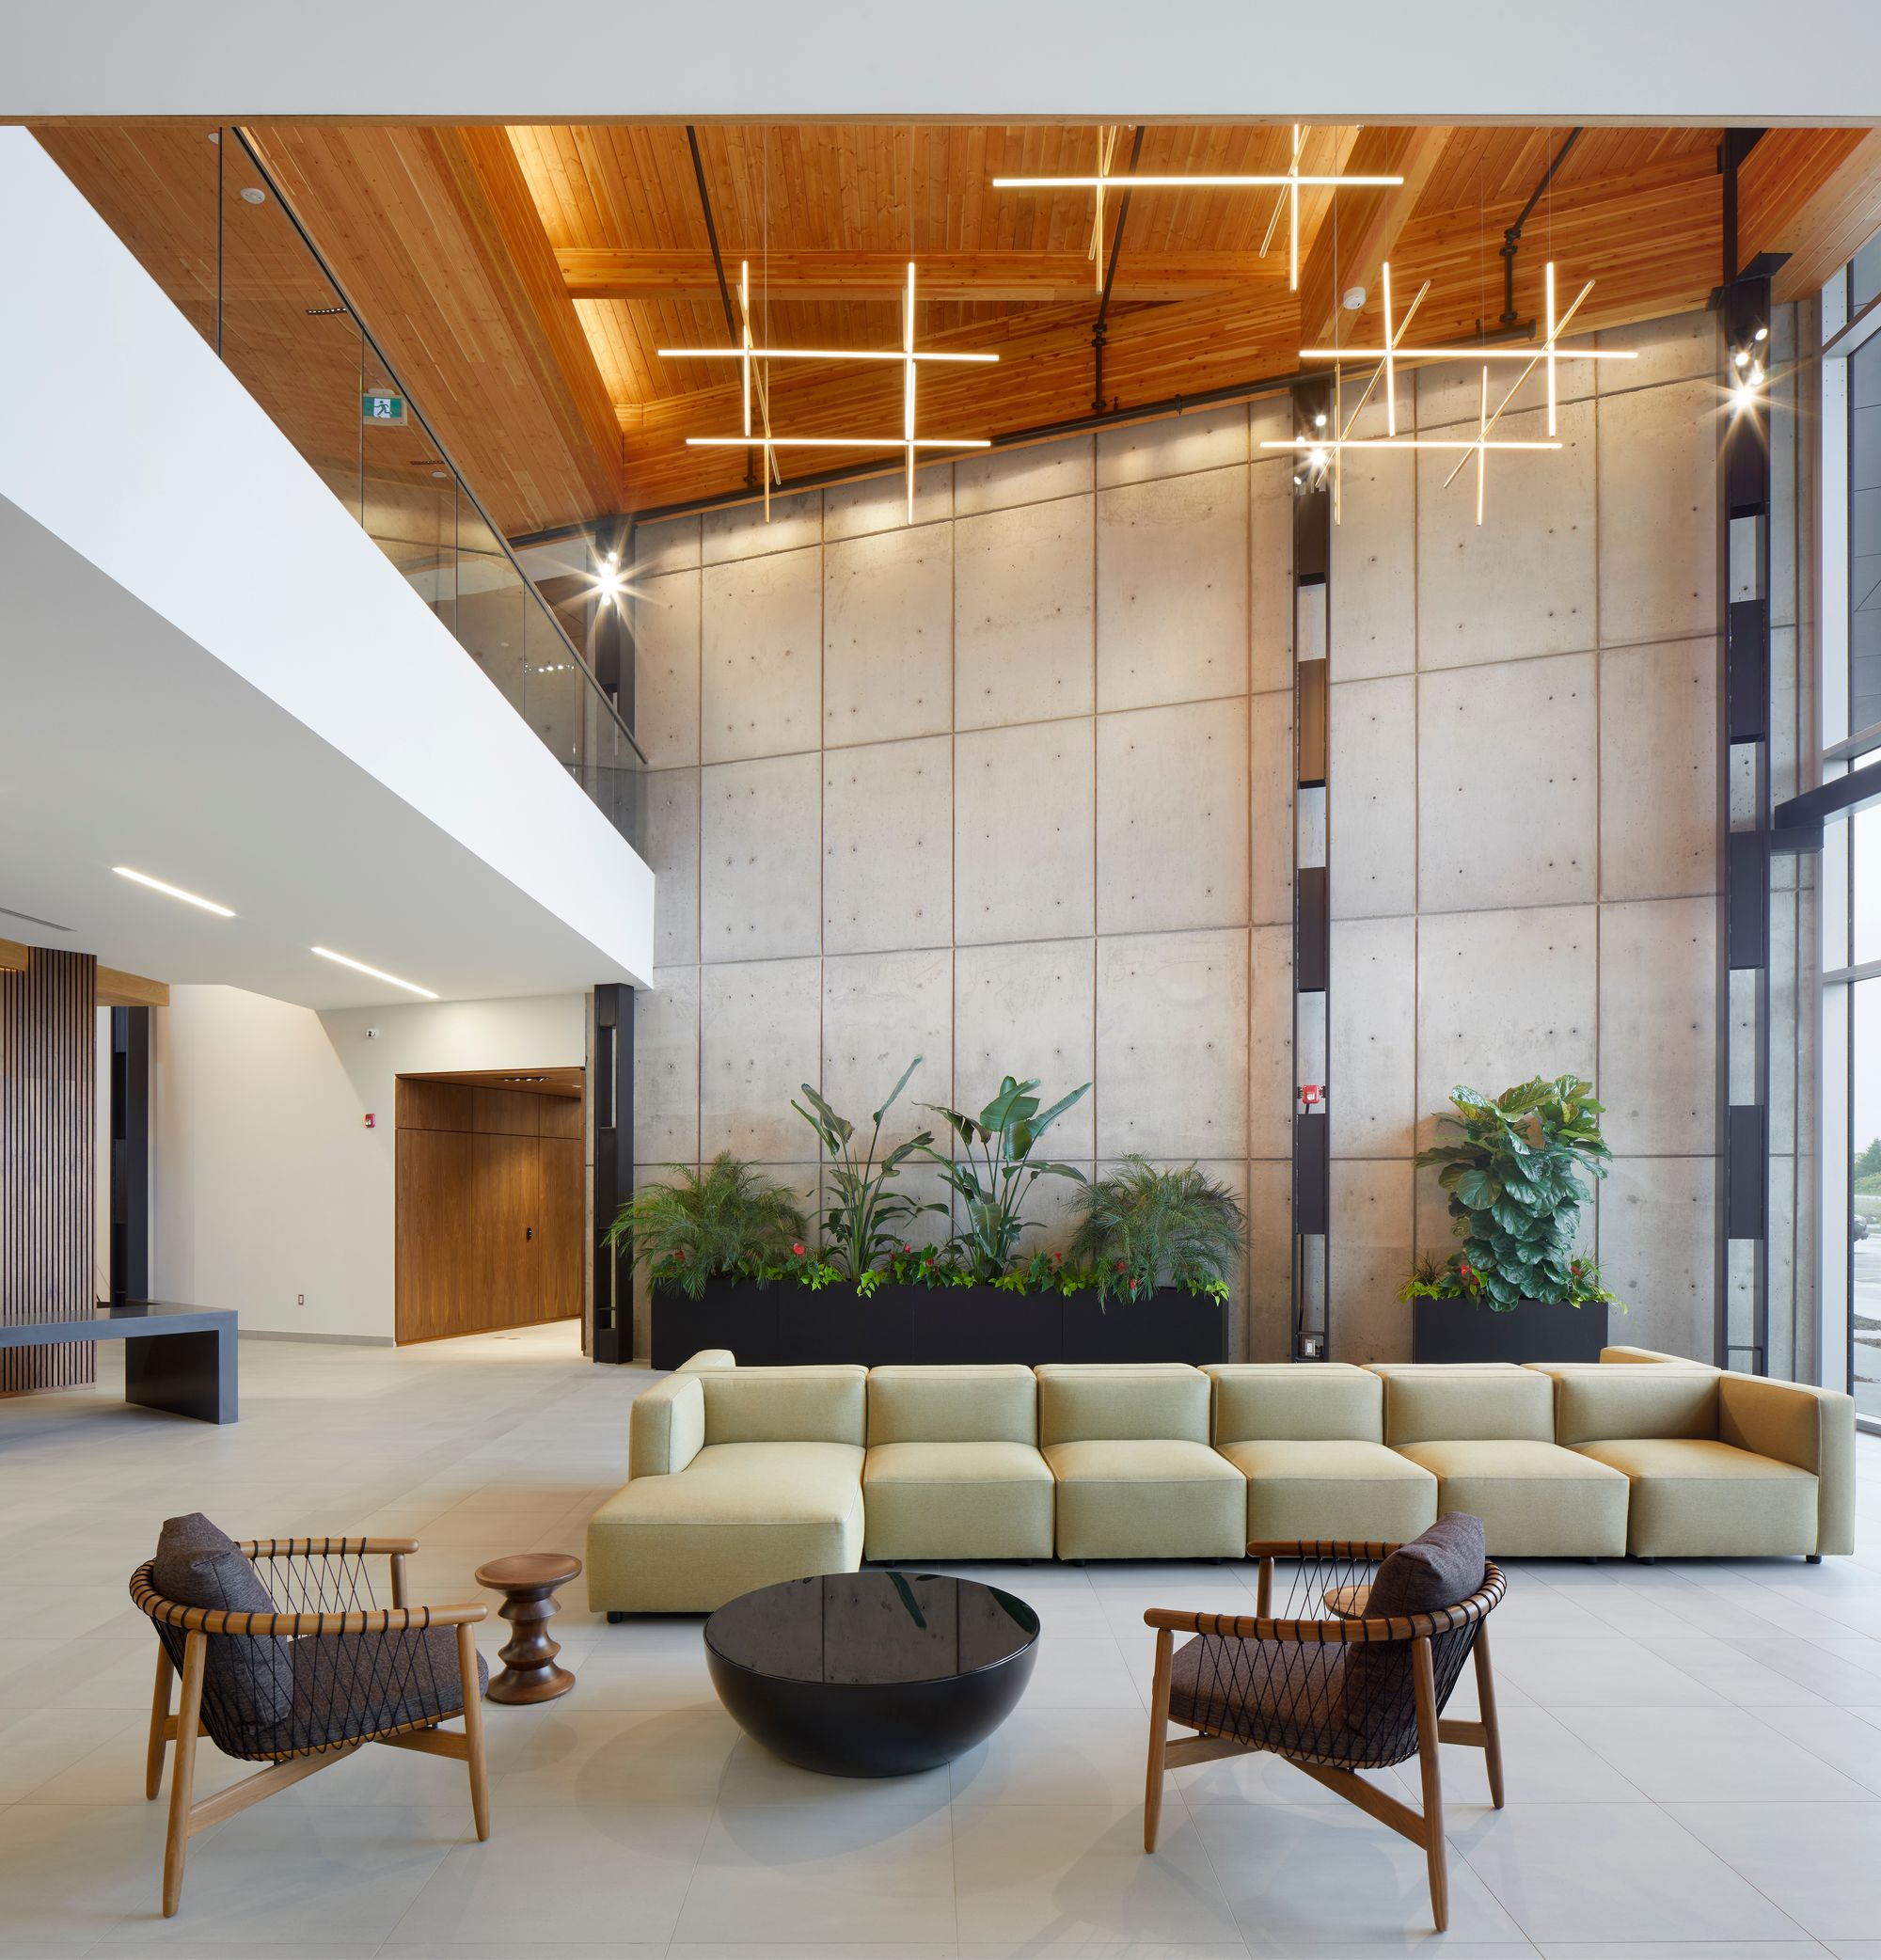 图片[5]|Caivan办公室-渥太华|ART-Arrakis | 建筑室内设计的创新与灵感